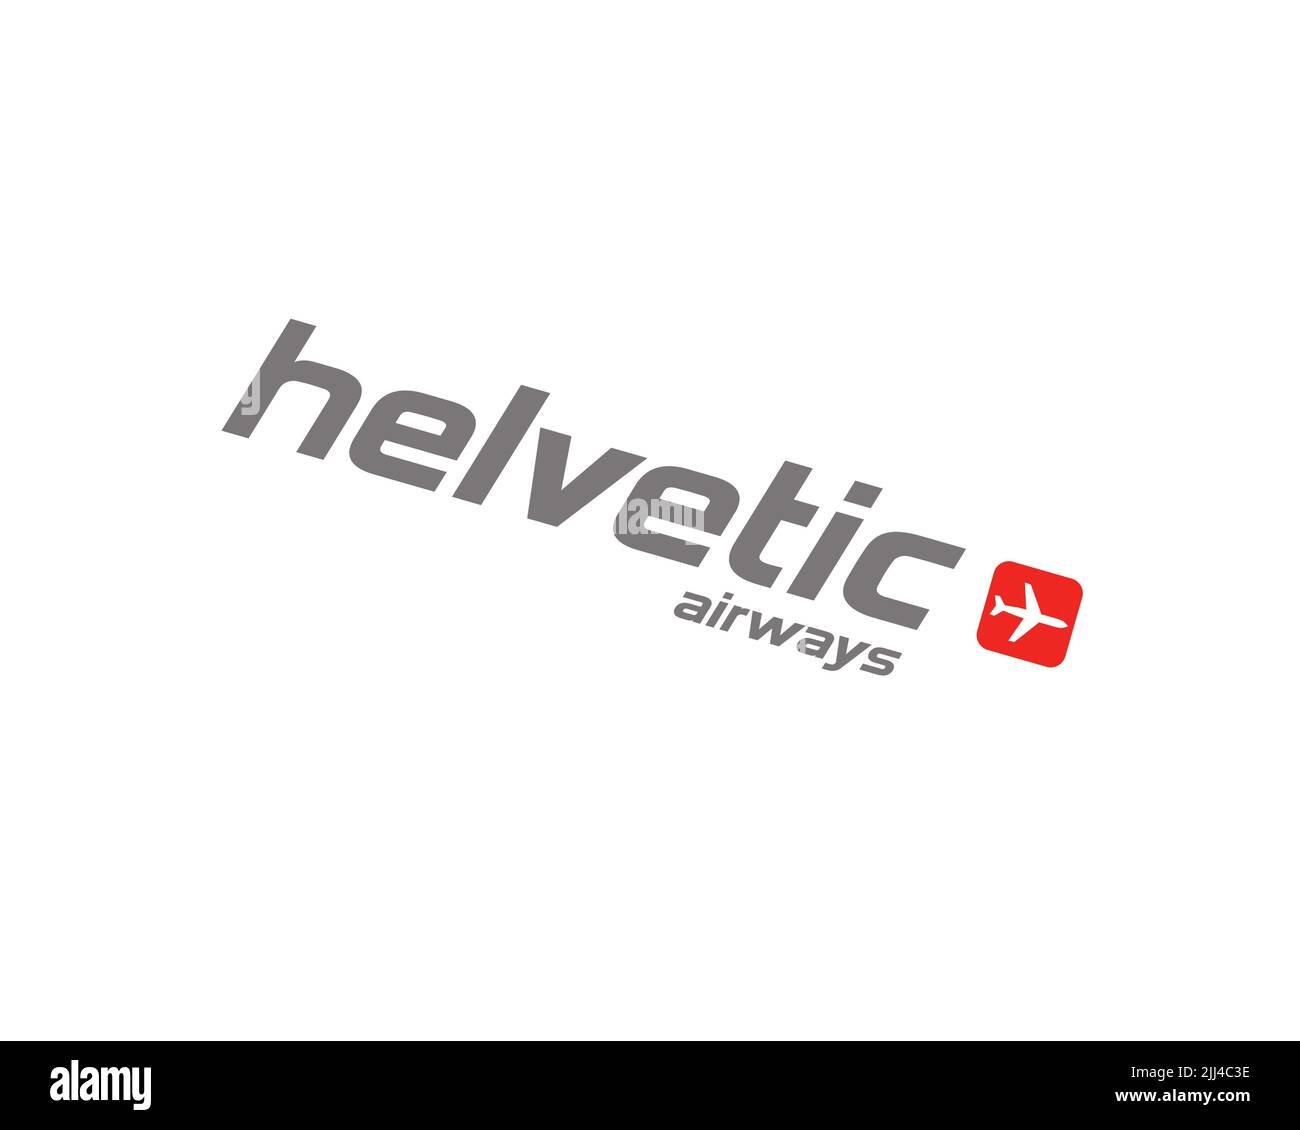 Helvetic-Airways